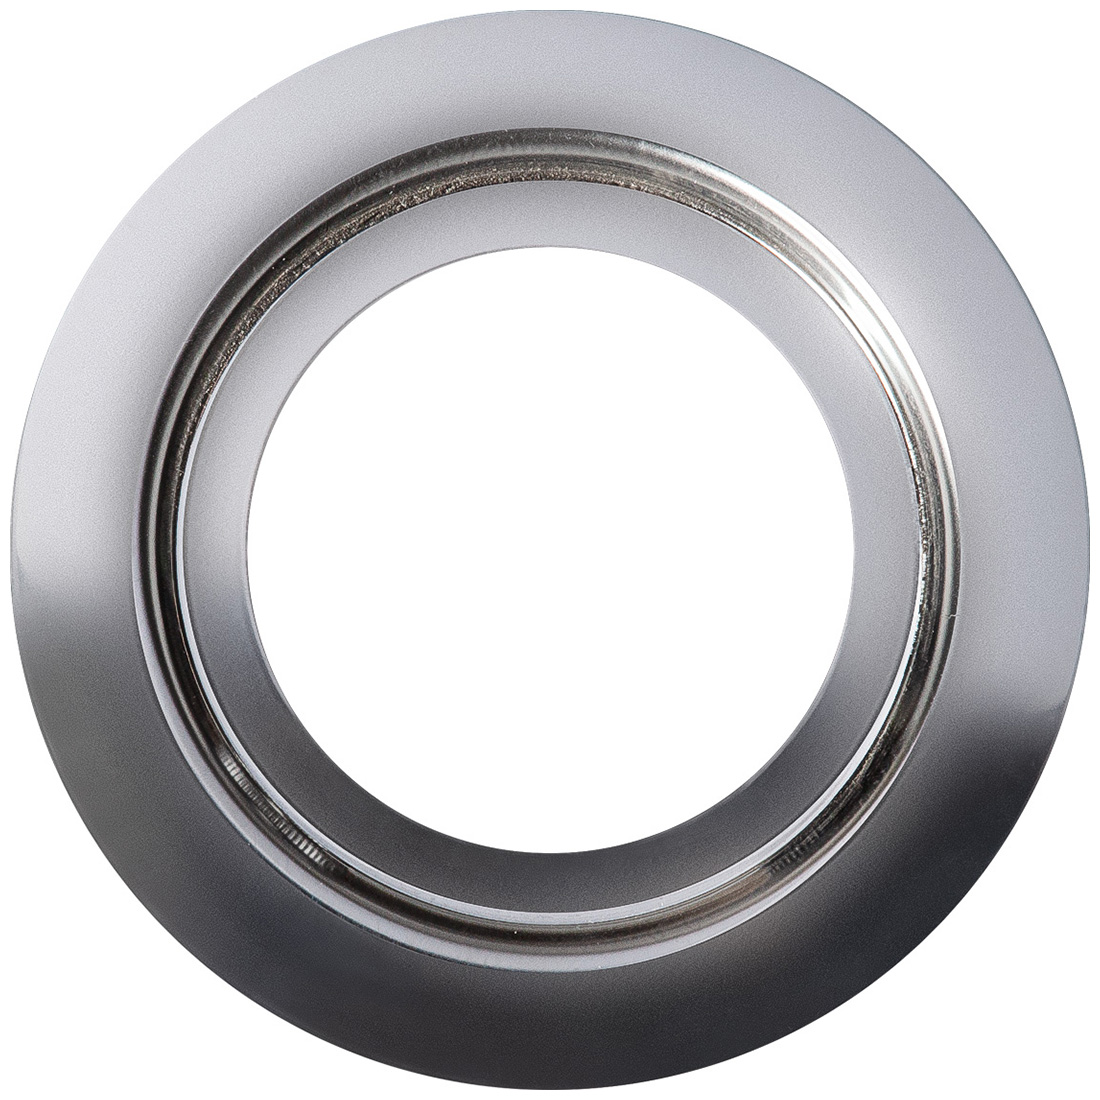 Кольцо переходник для измельчителя Bort Ring 140, 93412635 кольцо переходник для измельчителя bort ring 140 93412635